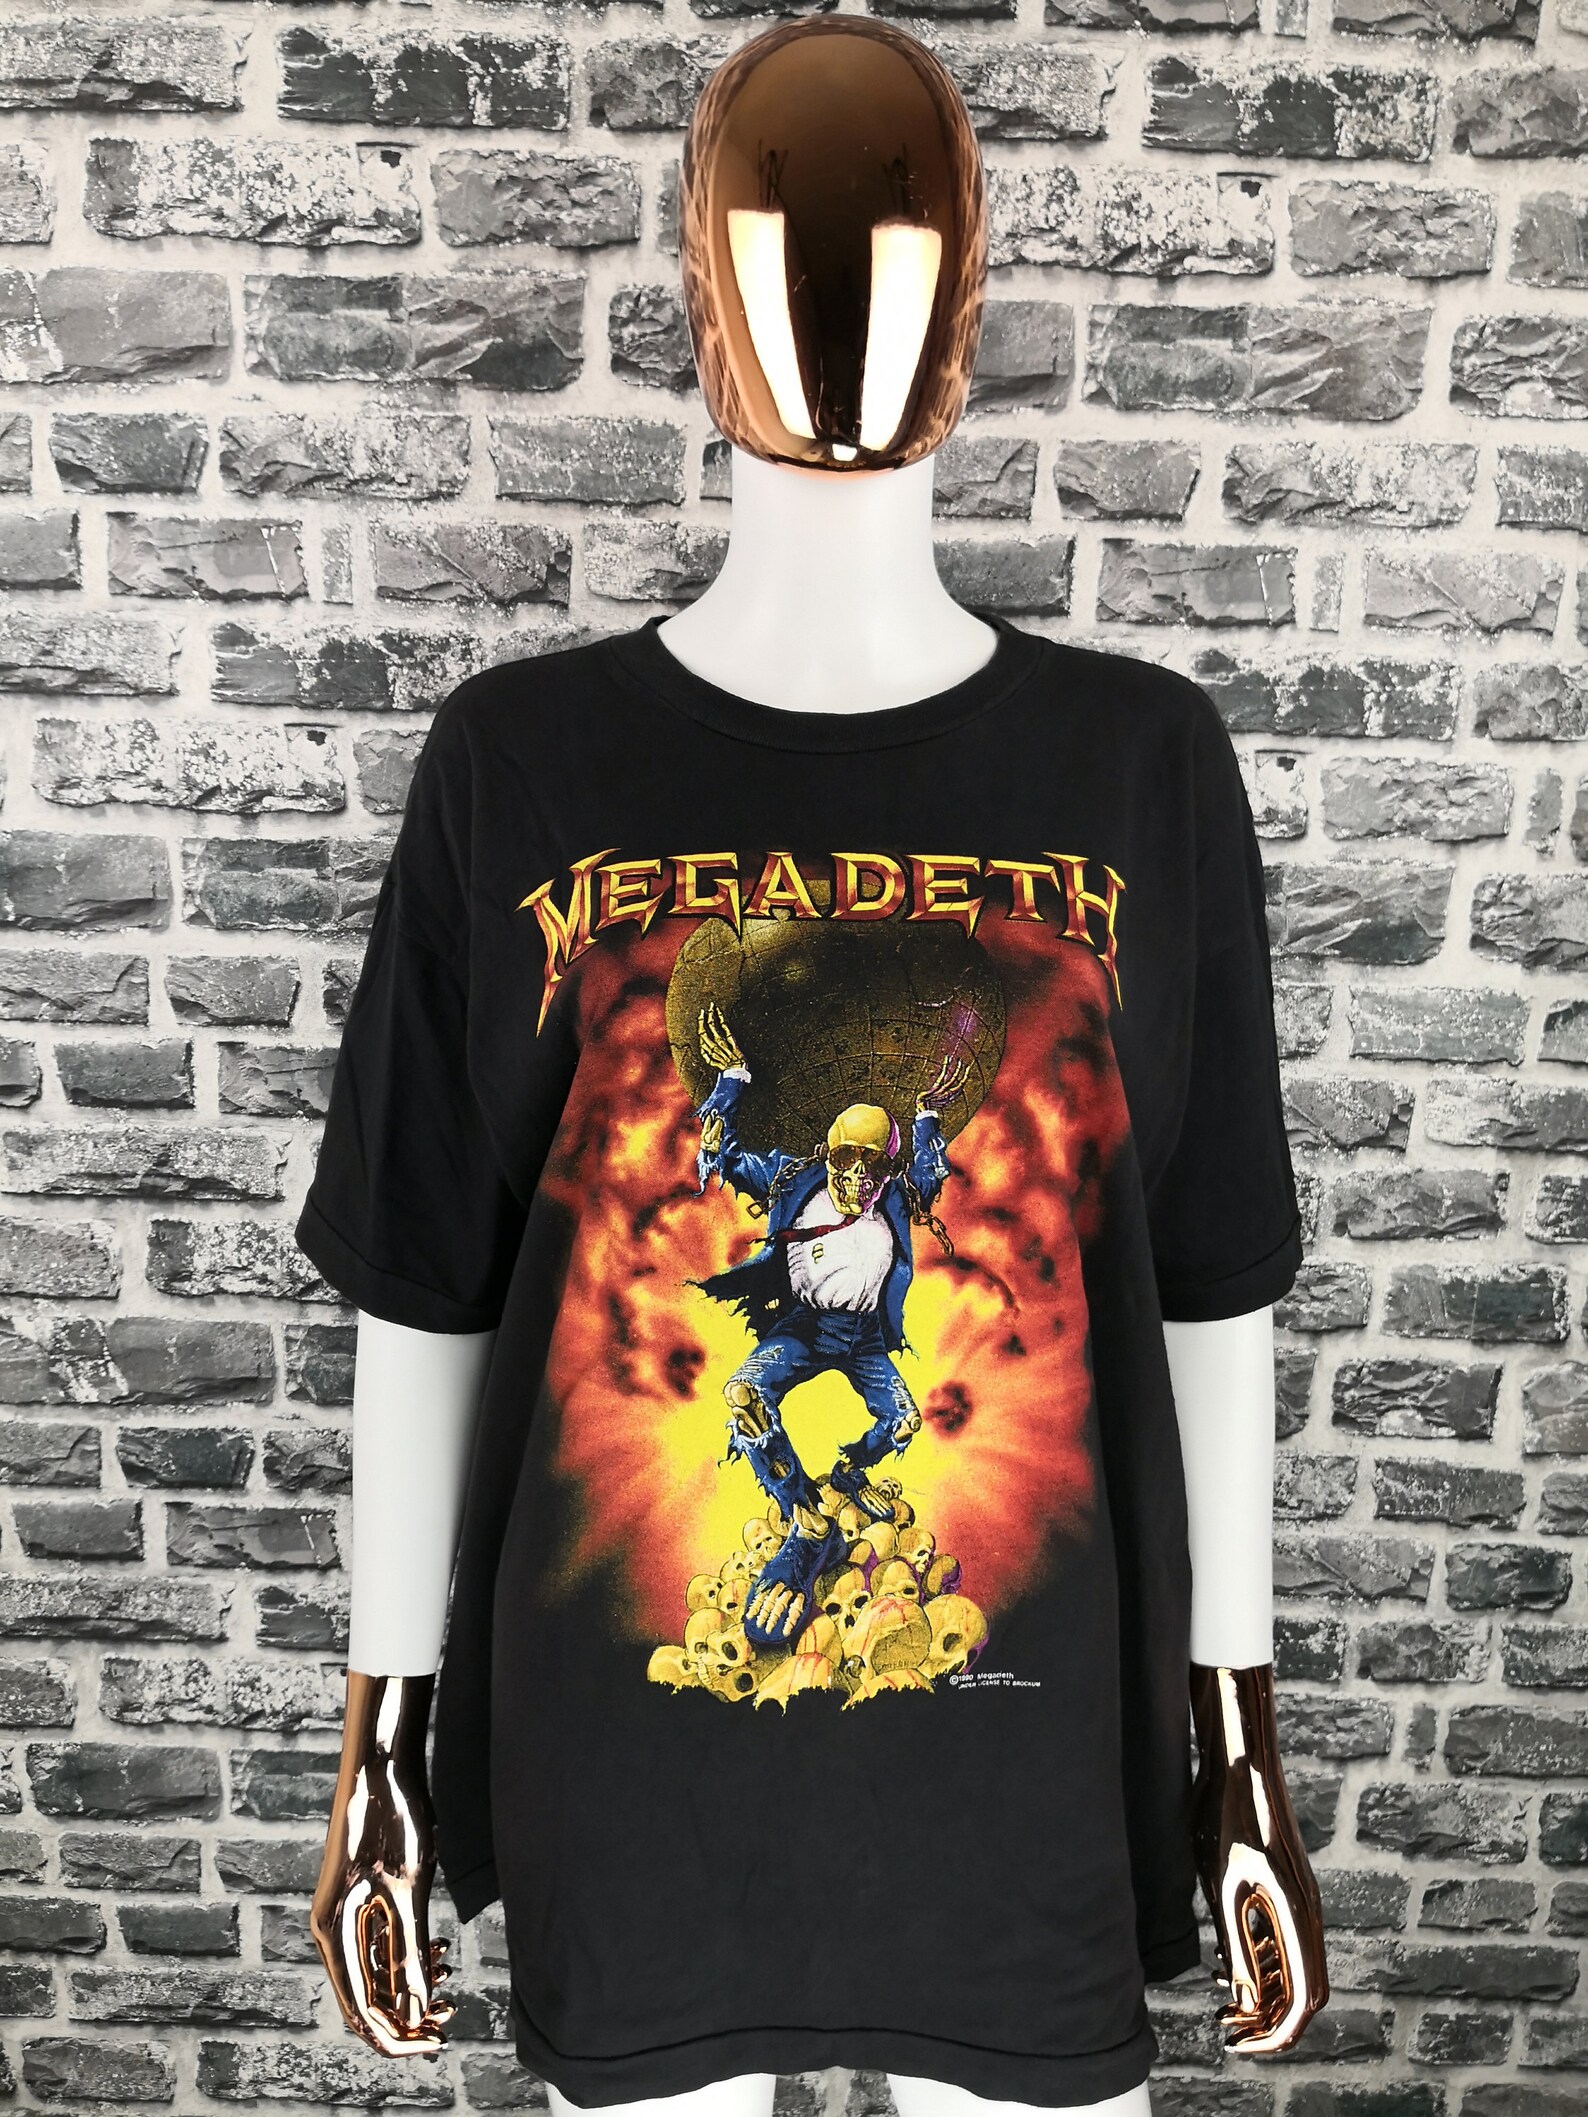 MEGADETH 1990 Unworn Vintage T-Shirt Oxidation of the | Etsy